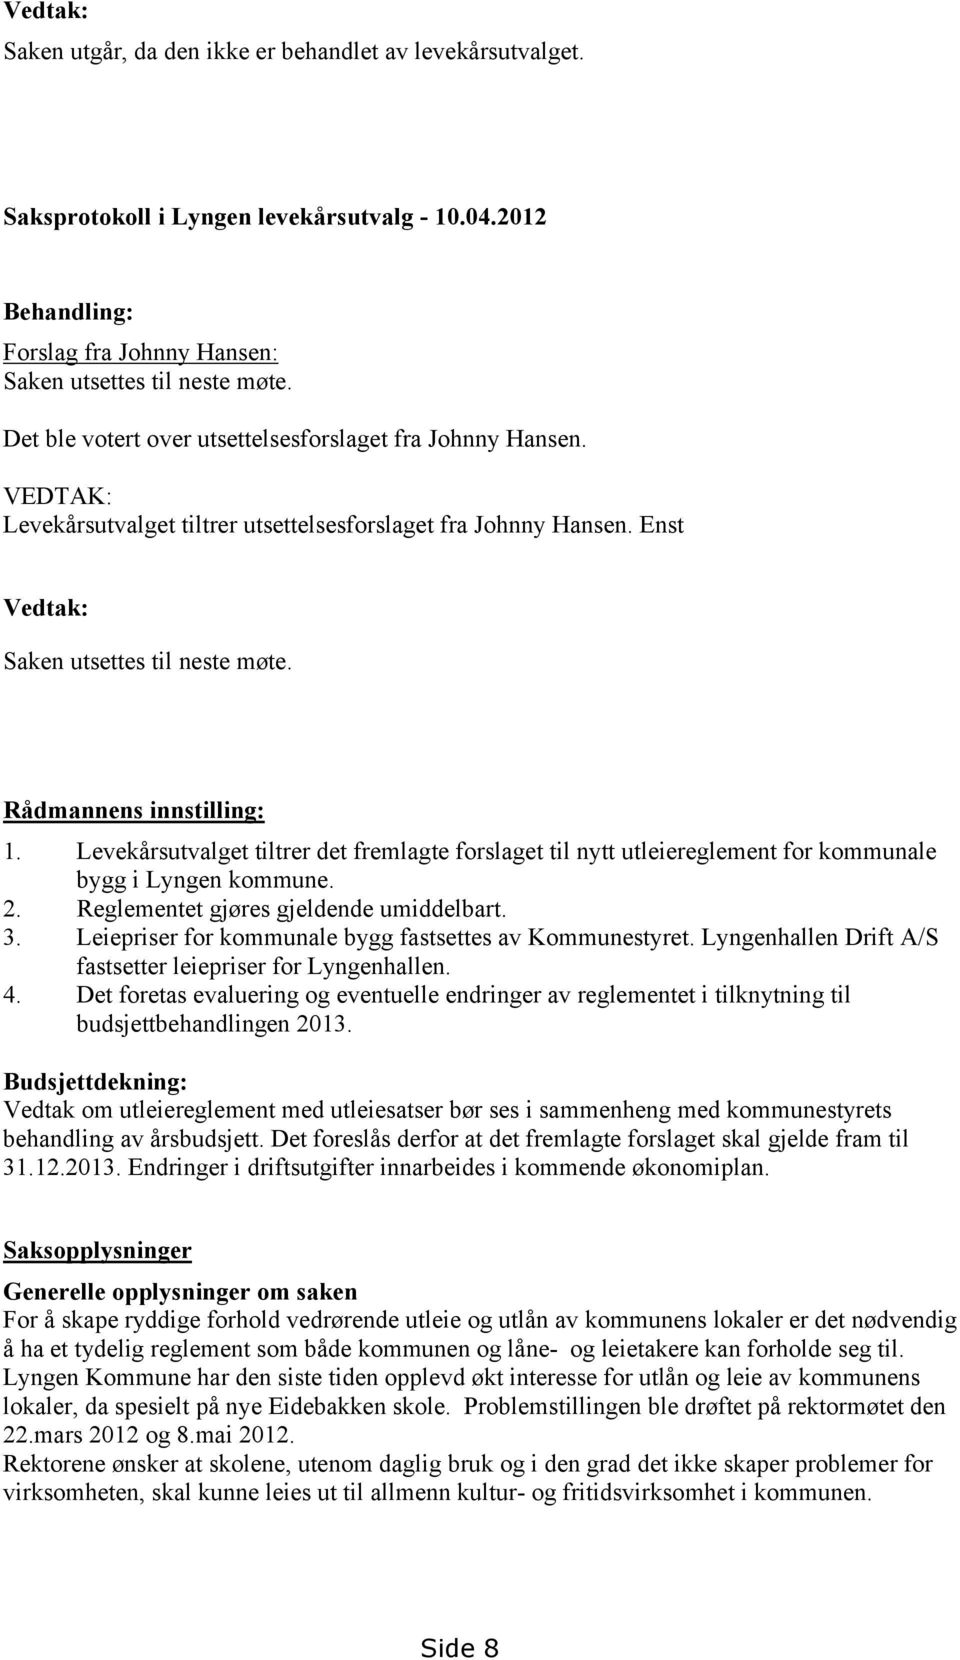 Rådmannens innstilling: 1. Levekårsutvalget tiltrer det fremlagte forslaget til nytt utleiereglement for kommunale bygg i Lyngen kommune. 2. Reglementet gjøres gjeldende umiddelbart. 3.